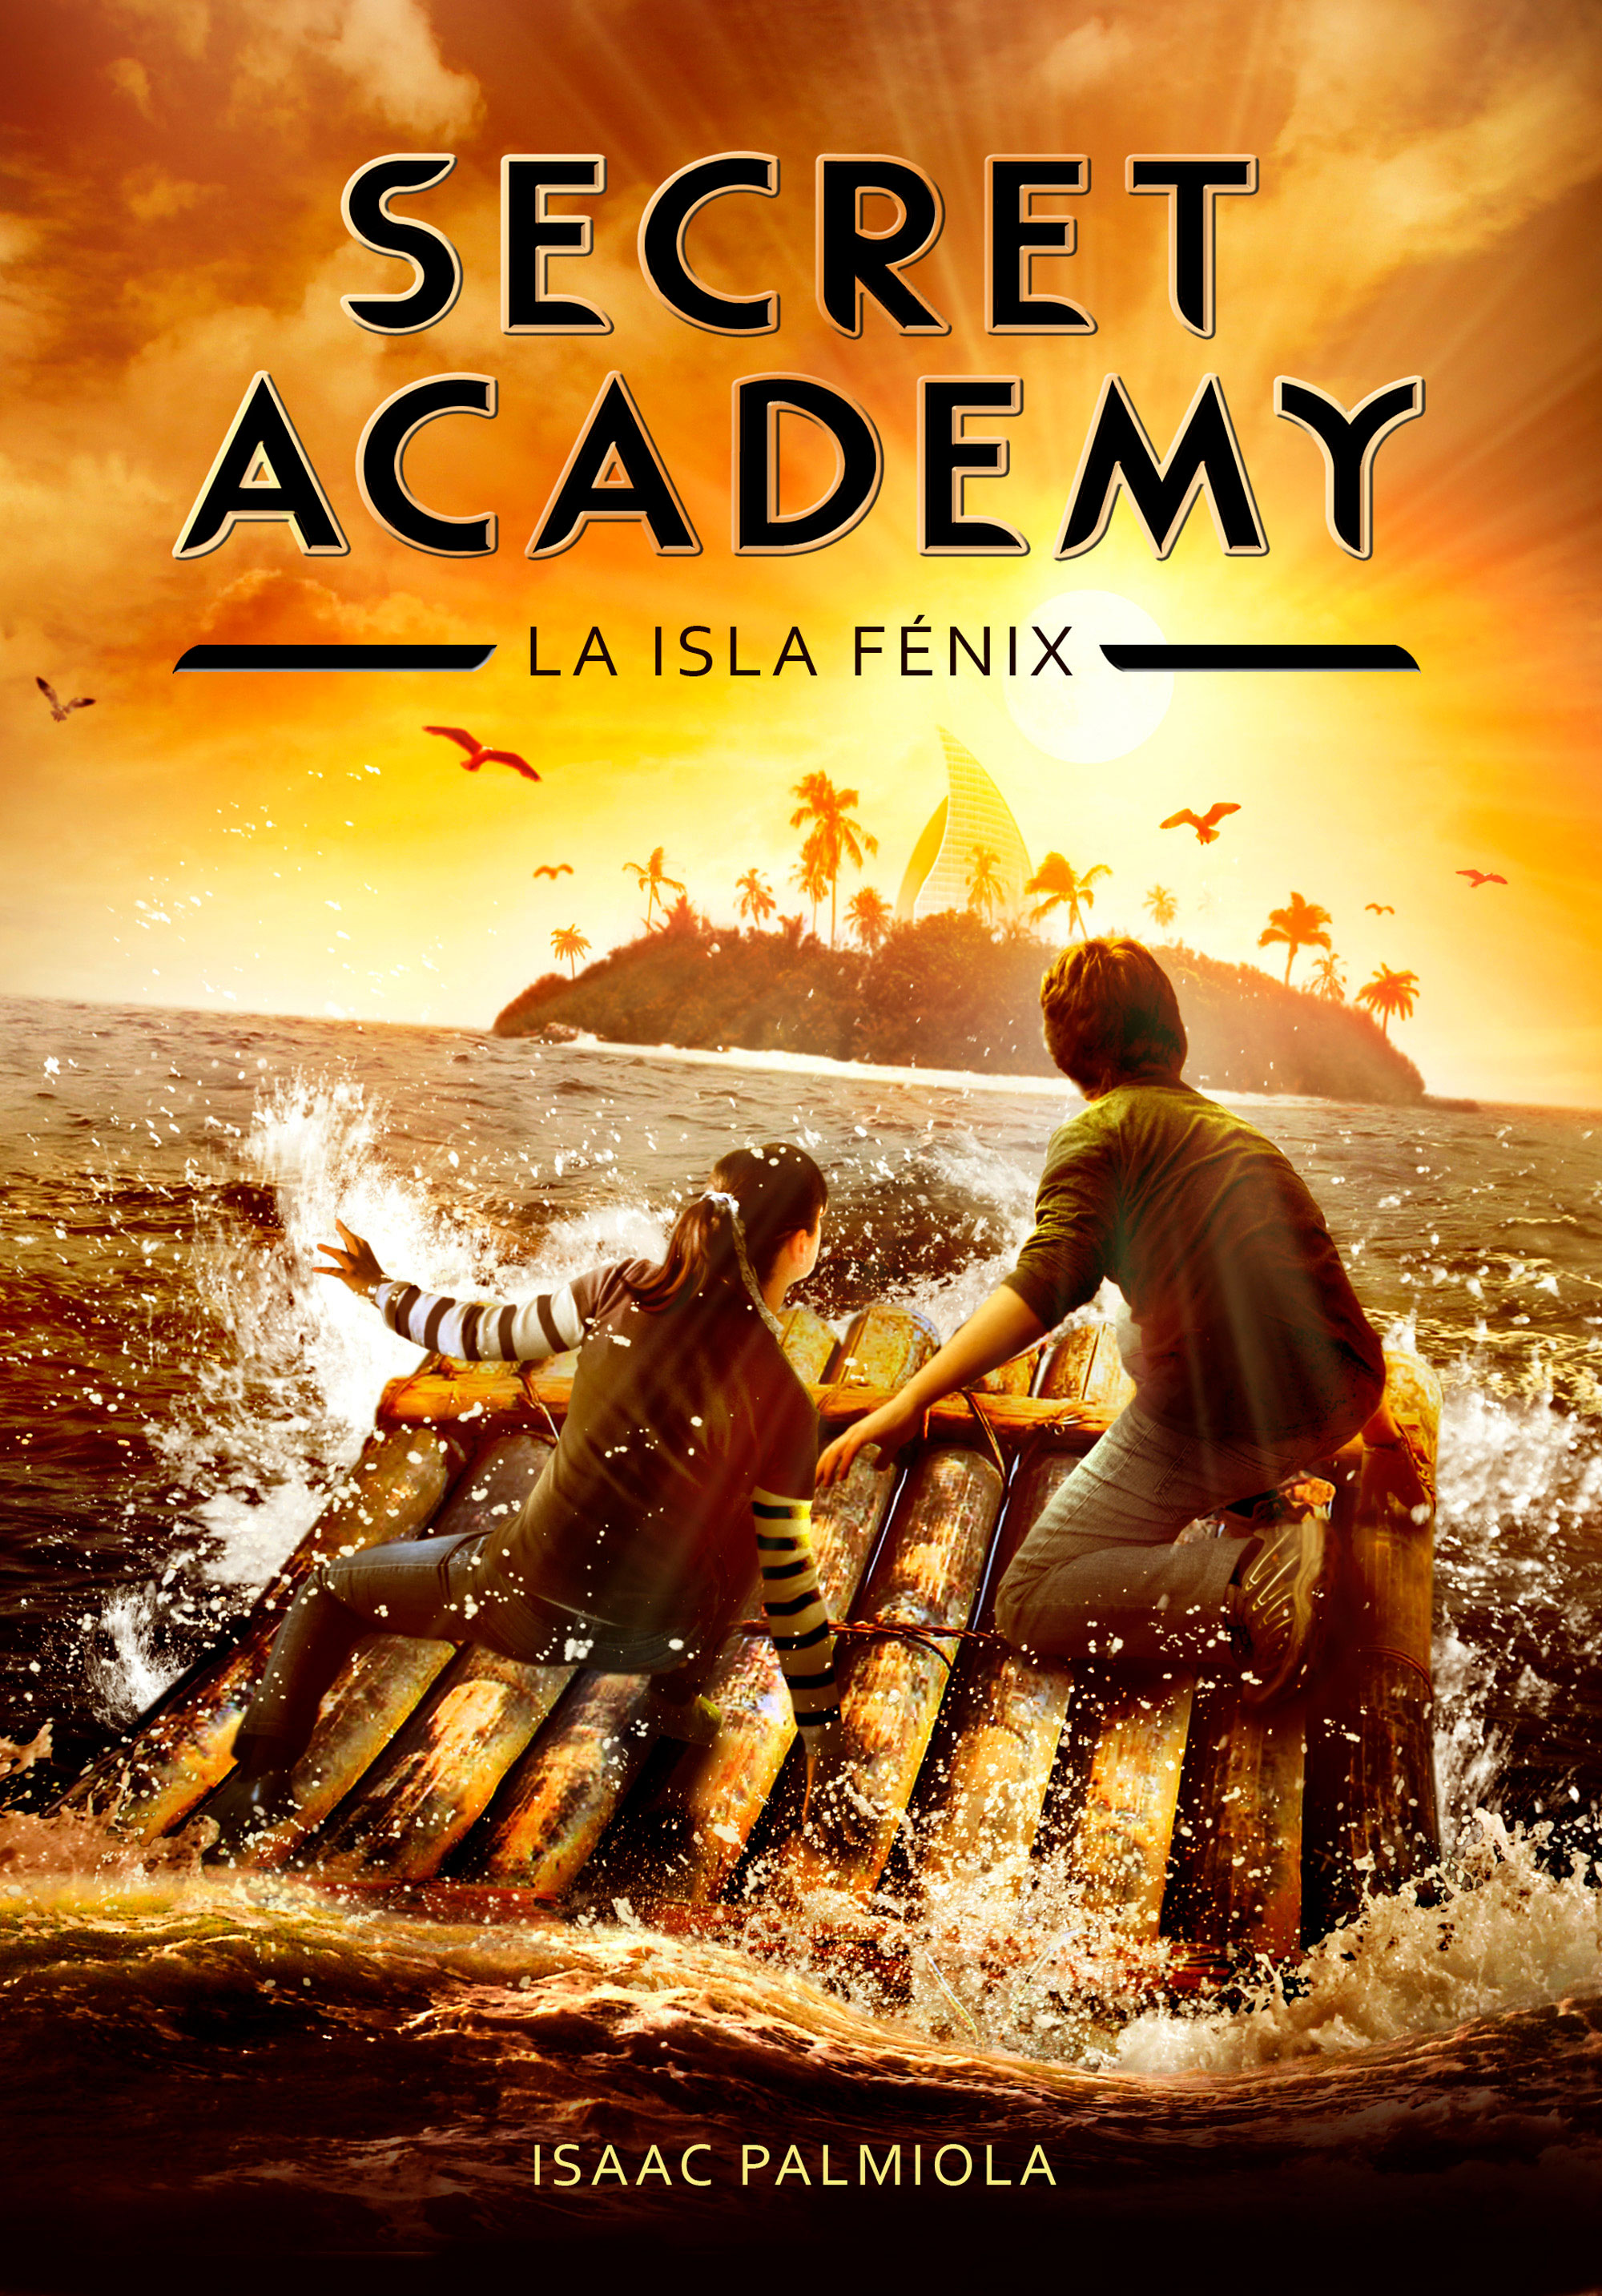 La isla Fénix - Secret Academy 1